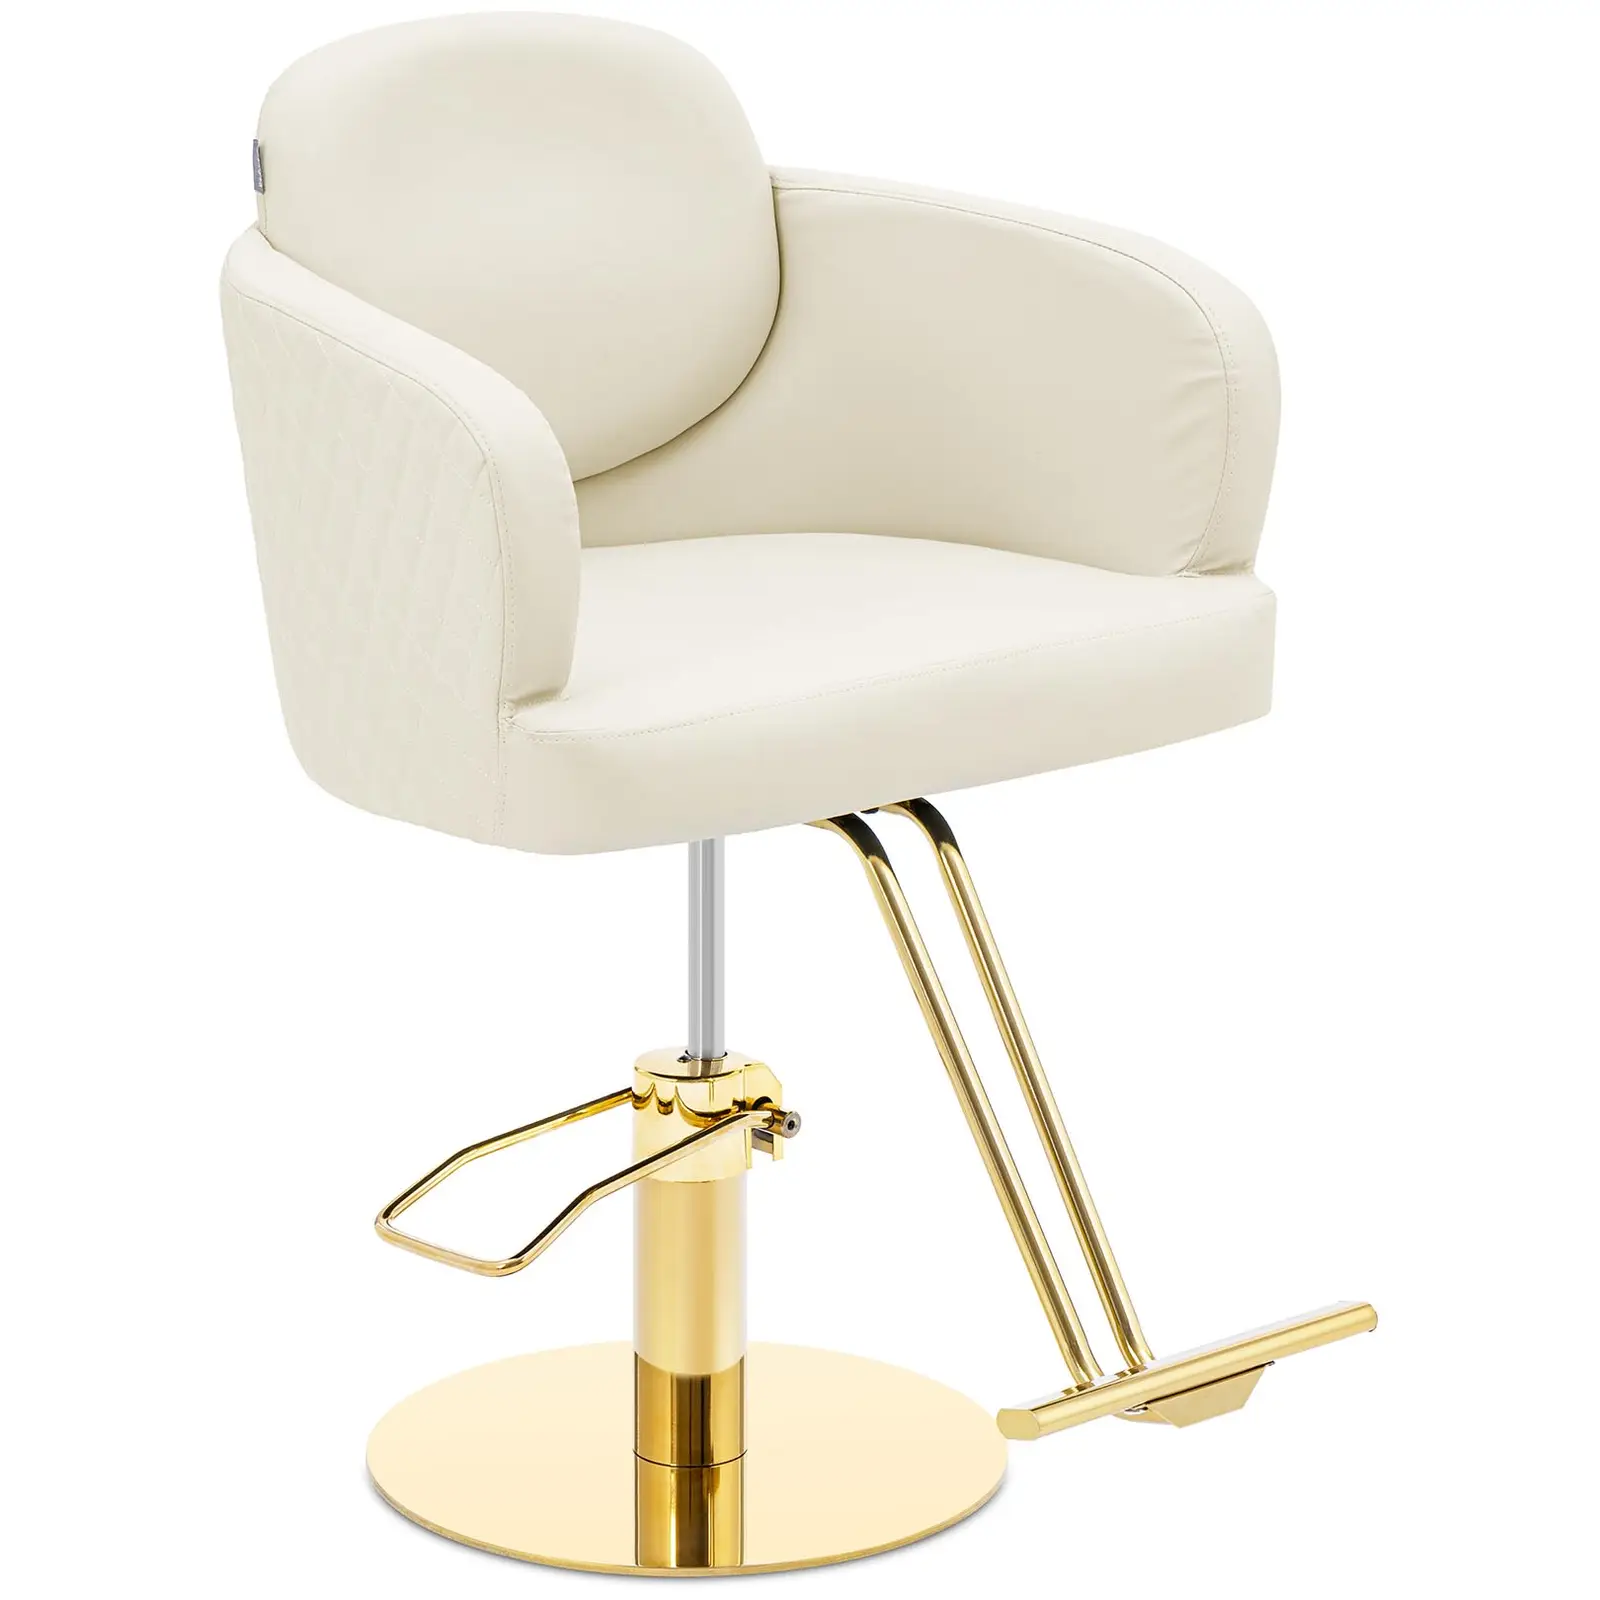 Salono kėdė su atramomis kojoms - 870 - 1020 mm - 200 kg - kreminė / auksinė